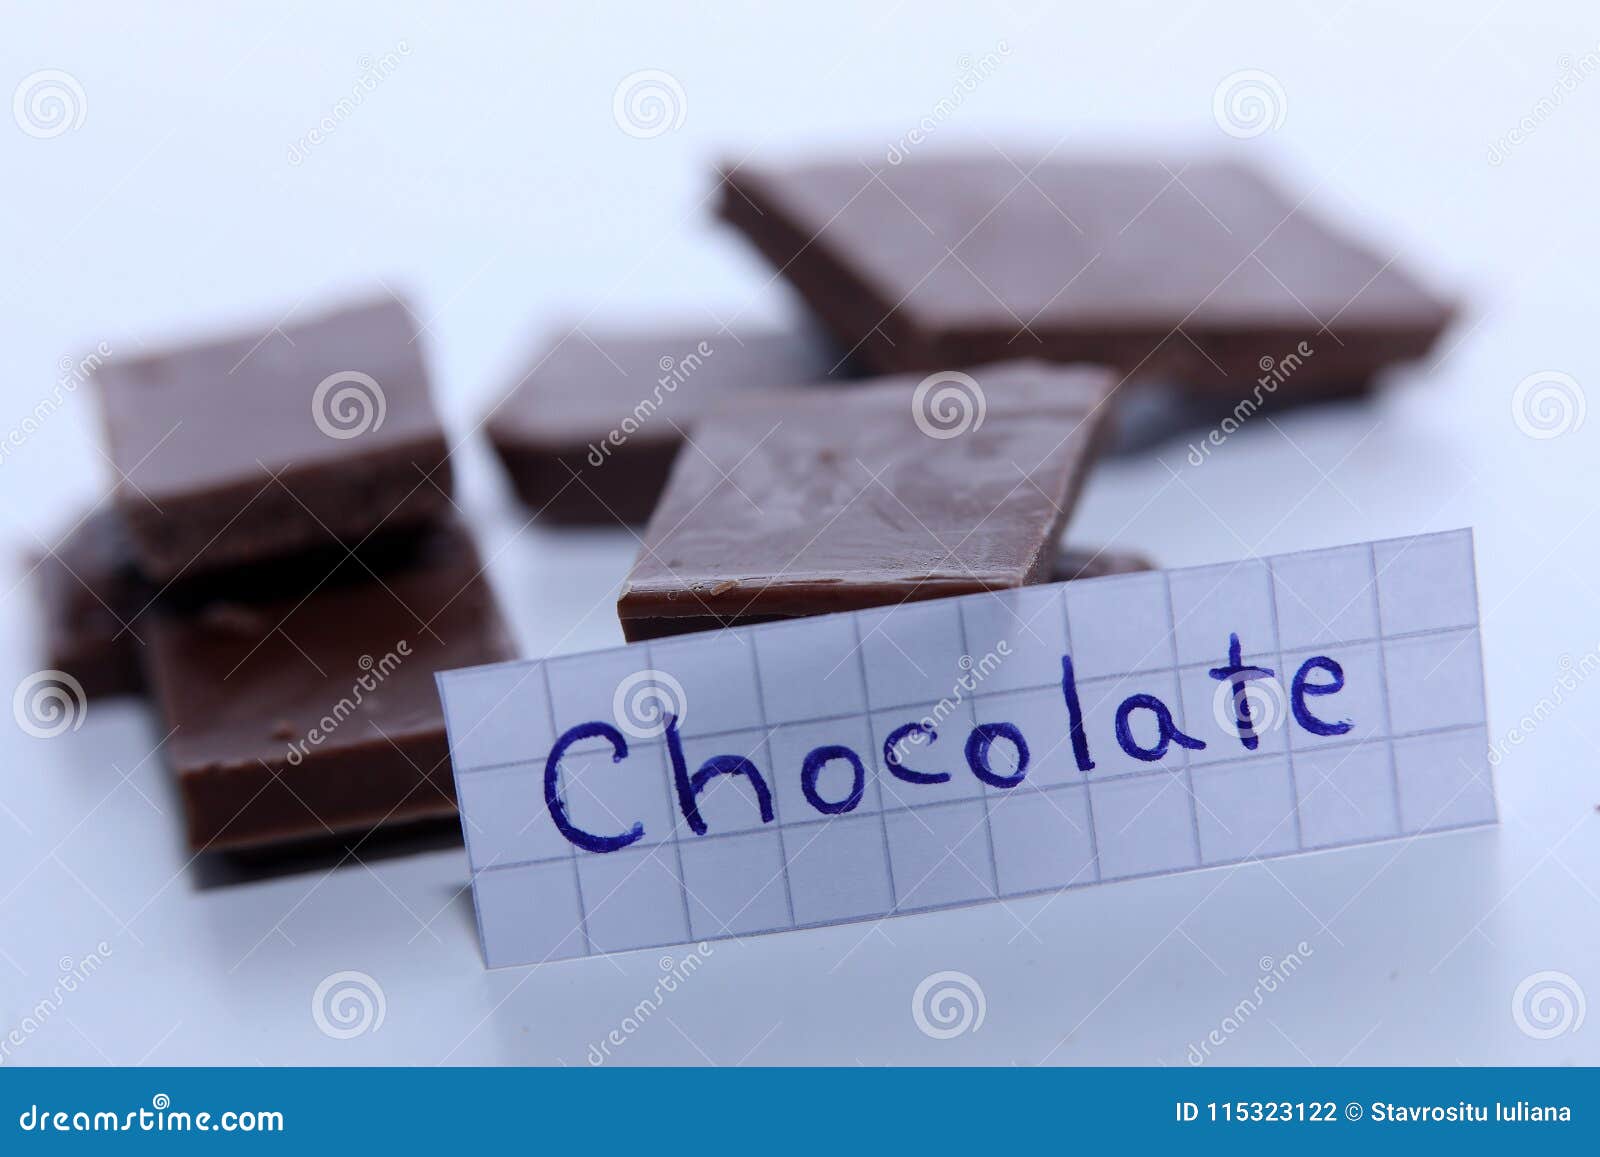 Как будет по английски шоколад. Шоколадки по английский. Как пишется по английски шоколад. Как по английски ШИКОЛАД. Иностранные слова шоколад.